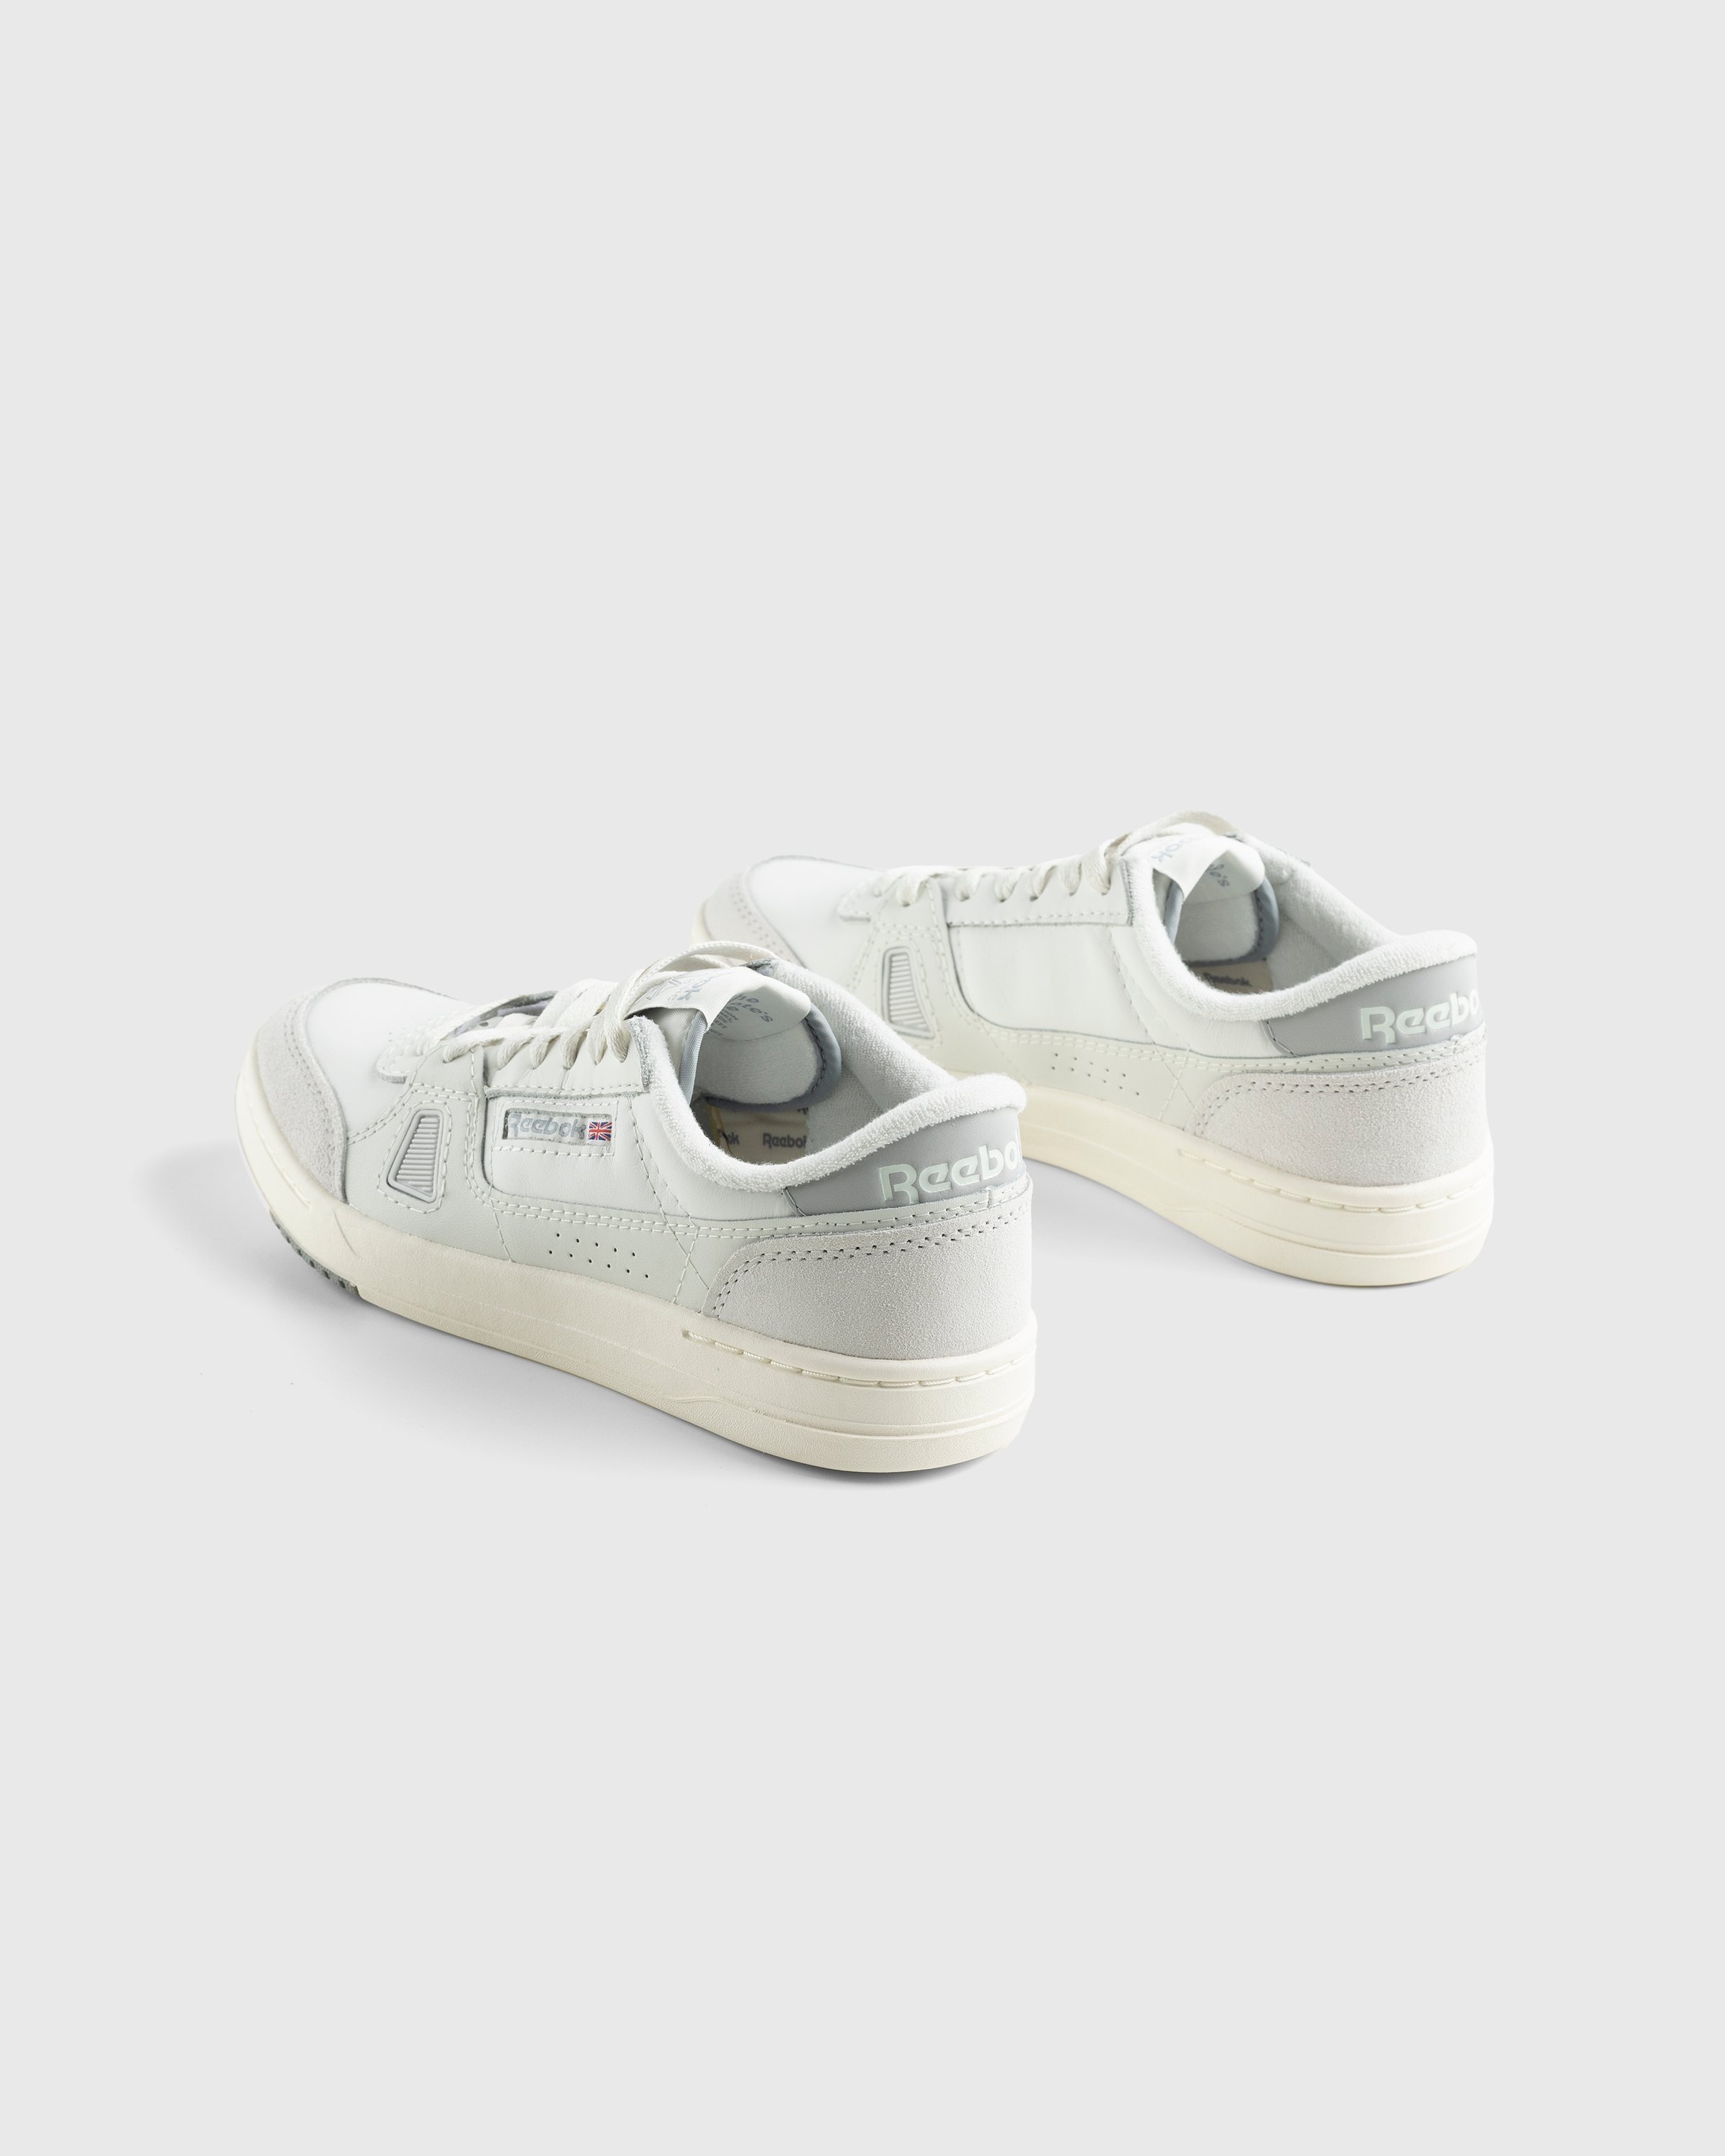 Reebok – LT Court Beige - Low Top Sneakers - Grey - Image 4